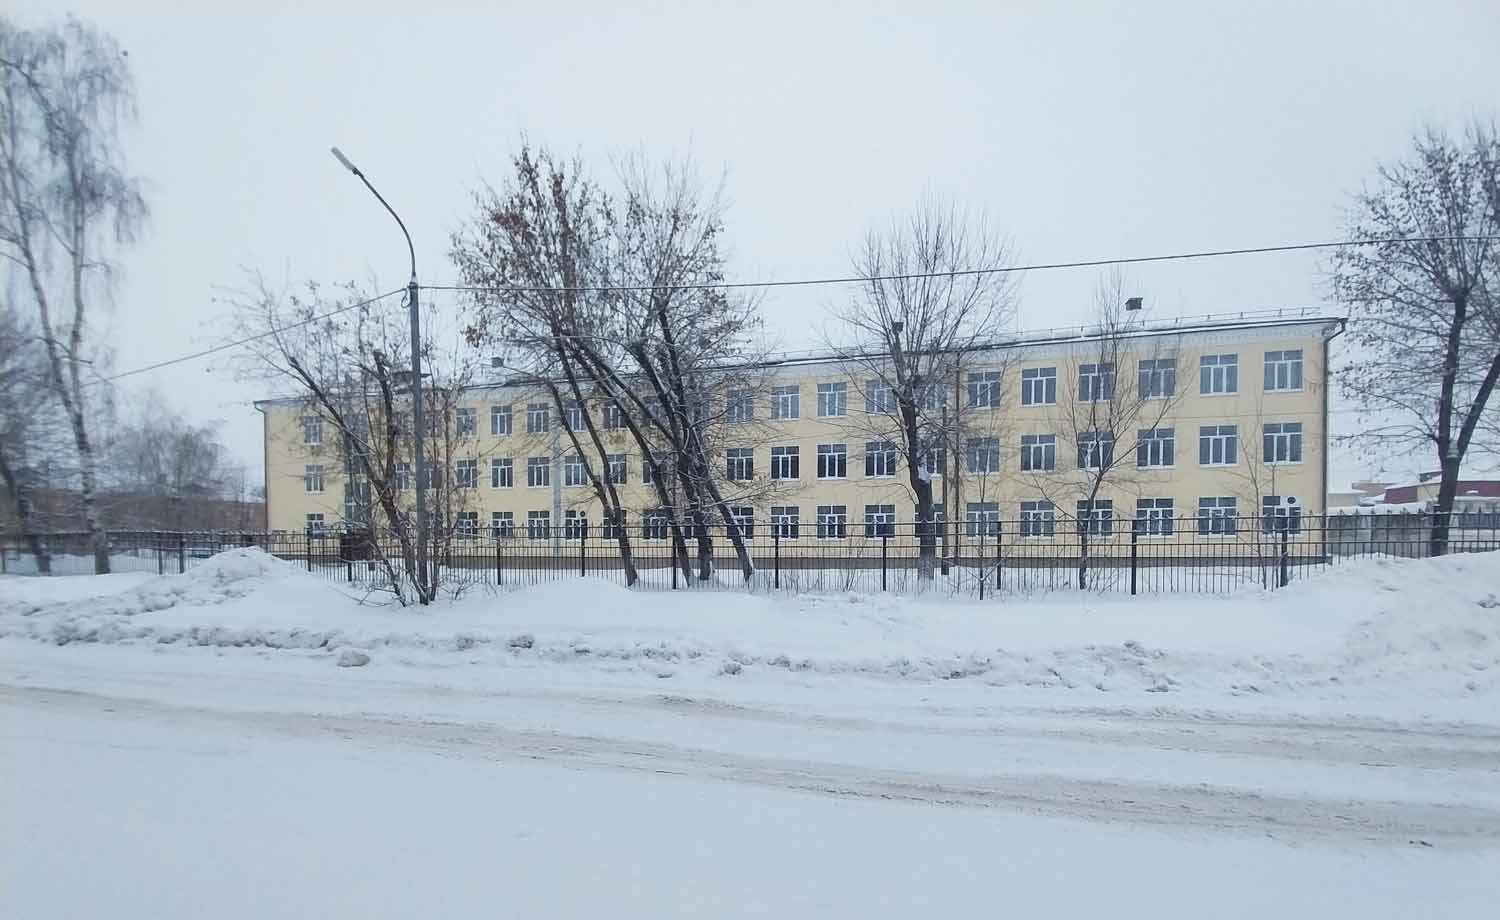 Между школьный учебный комбинат по улице Городская 2 Московского района работает в режиме обучения по расписанию разных школ.